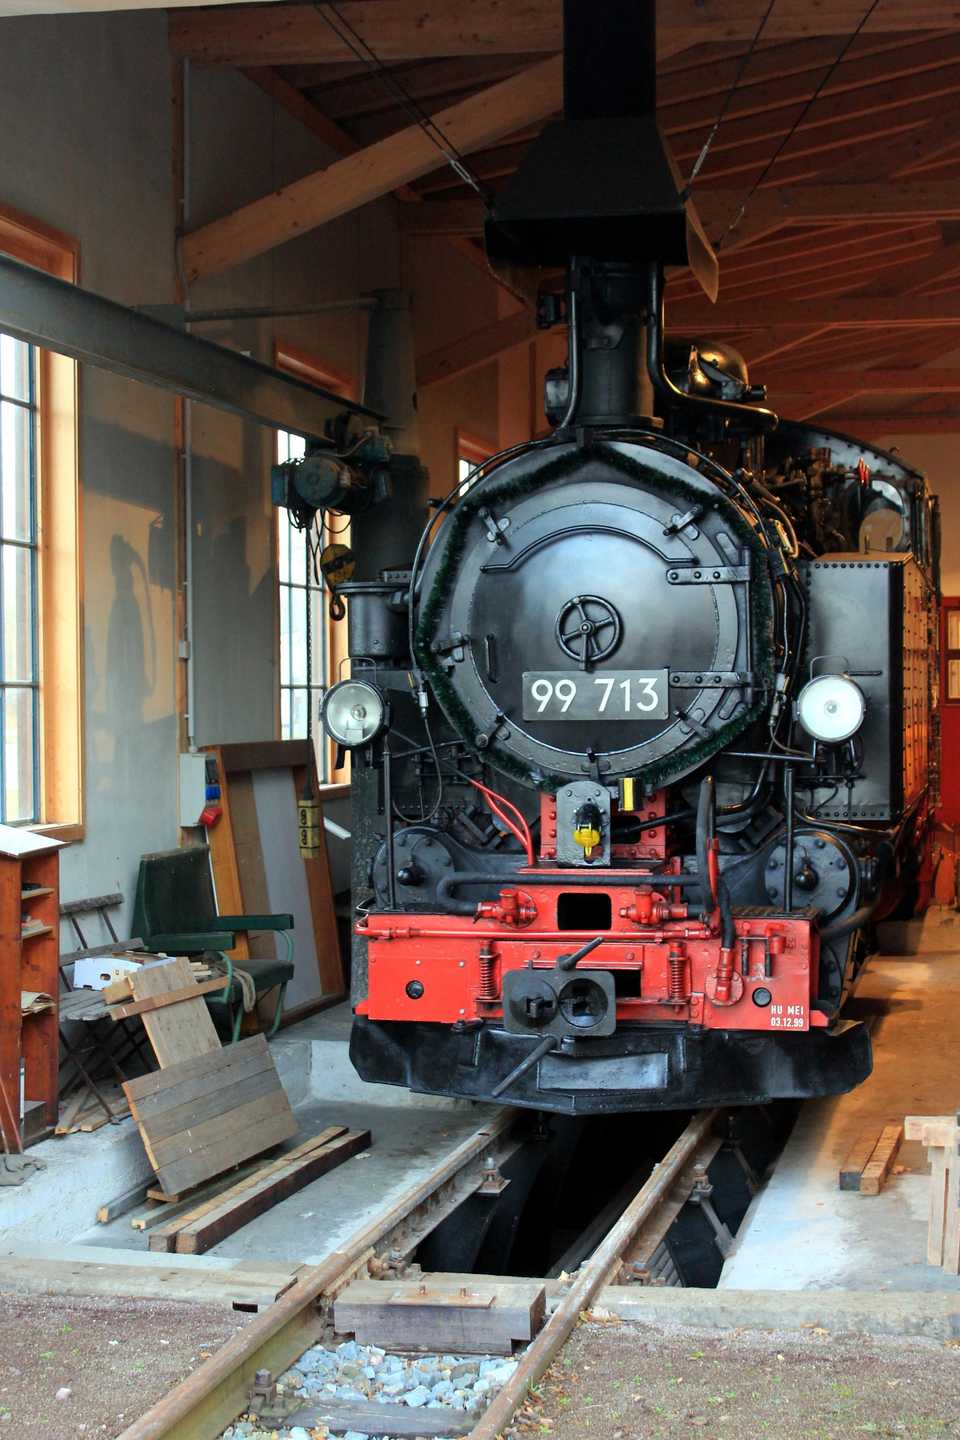 Am 18. Dezember wurde die VI K 99 713 der SDG als Leihgabe nach Wilsdruff überführt und präsentierte sich am Nachmittag im Schmalspurbahnmuseum Historischer Lokschuppen Wilsdruff.